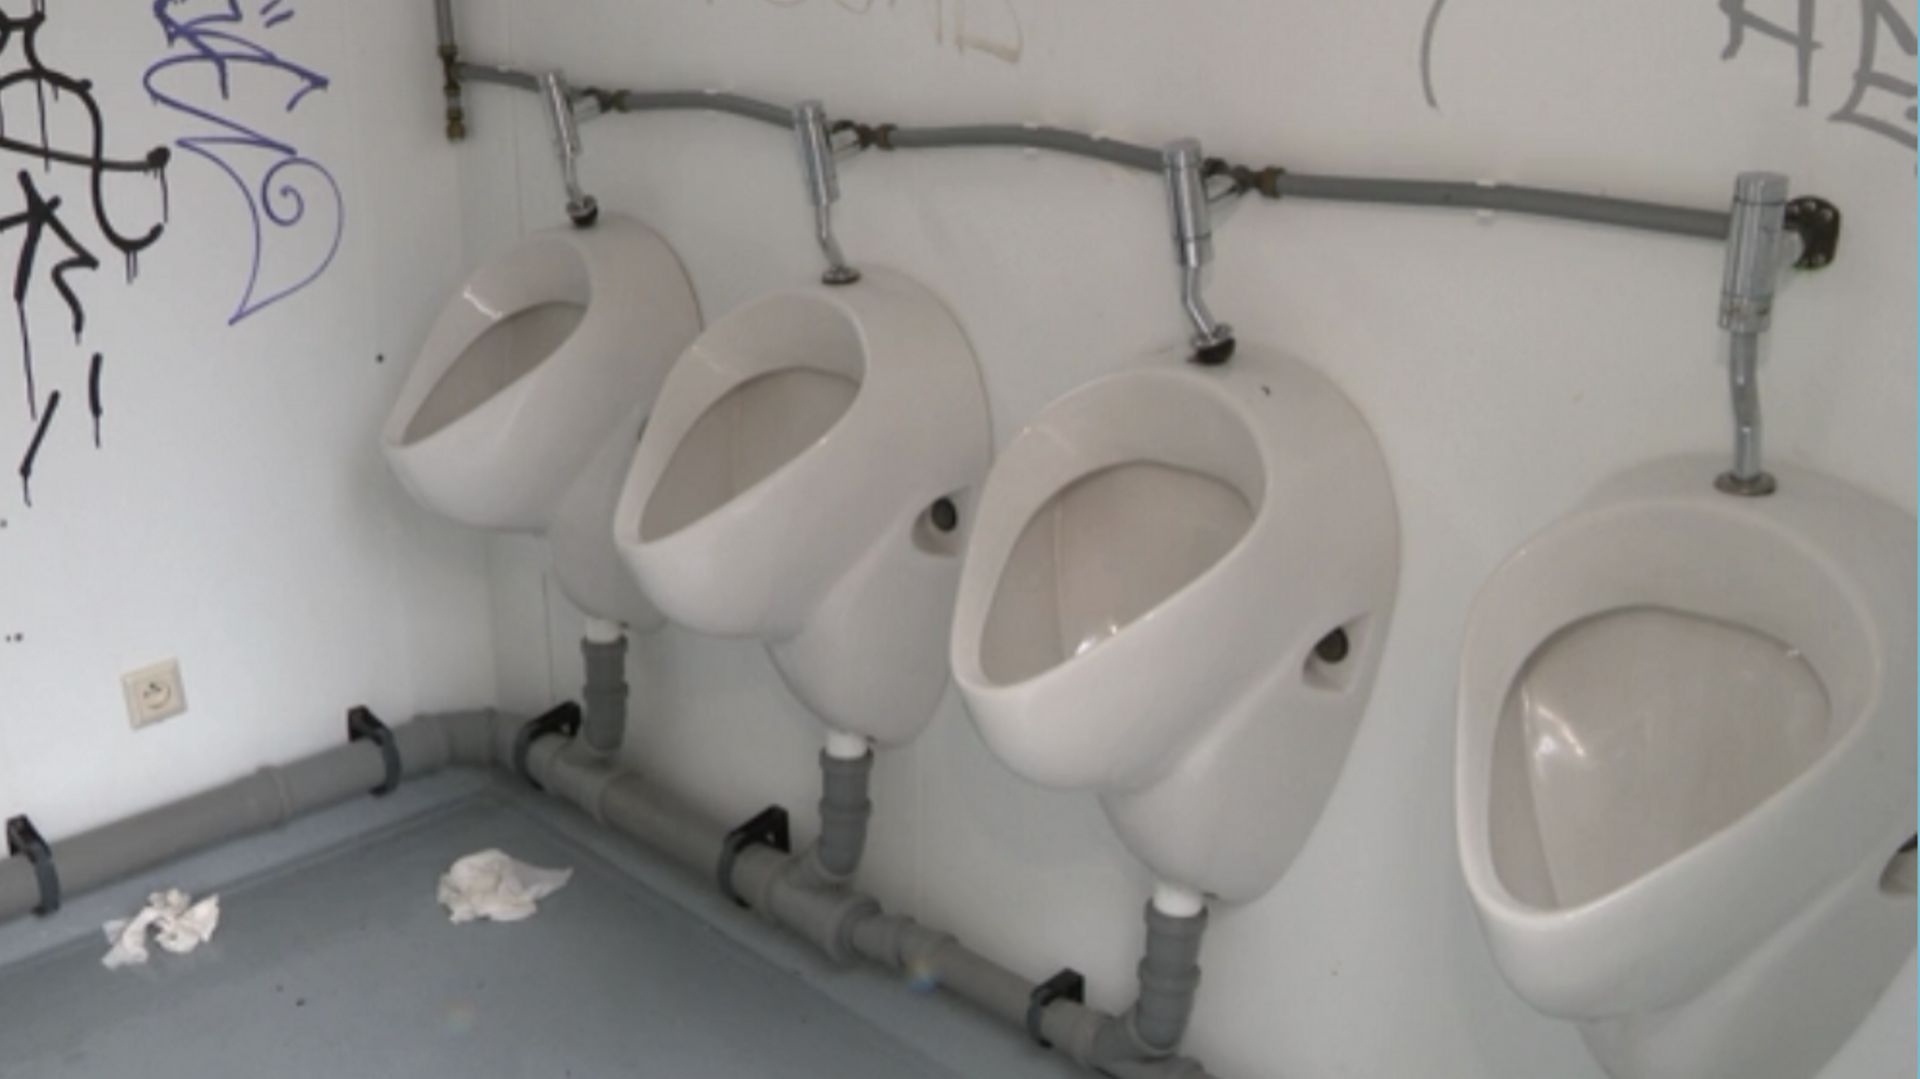 Peesy, l'application qui recense les toilettes publiques bruxelloises